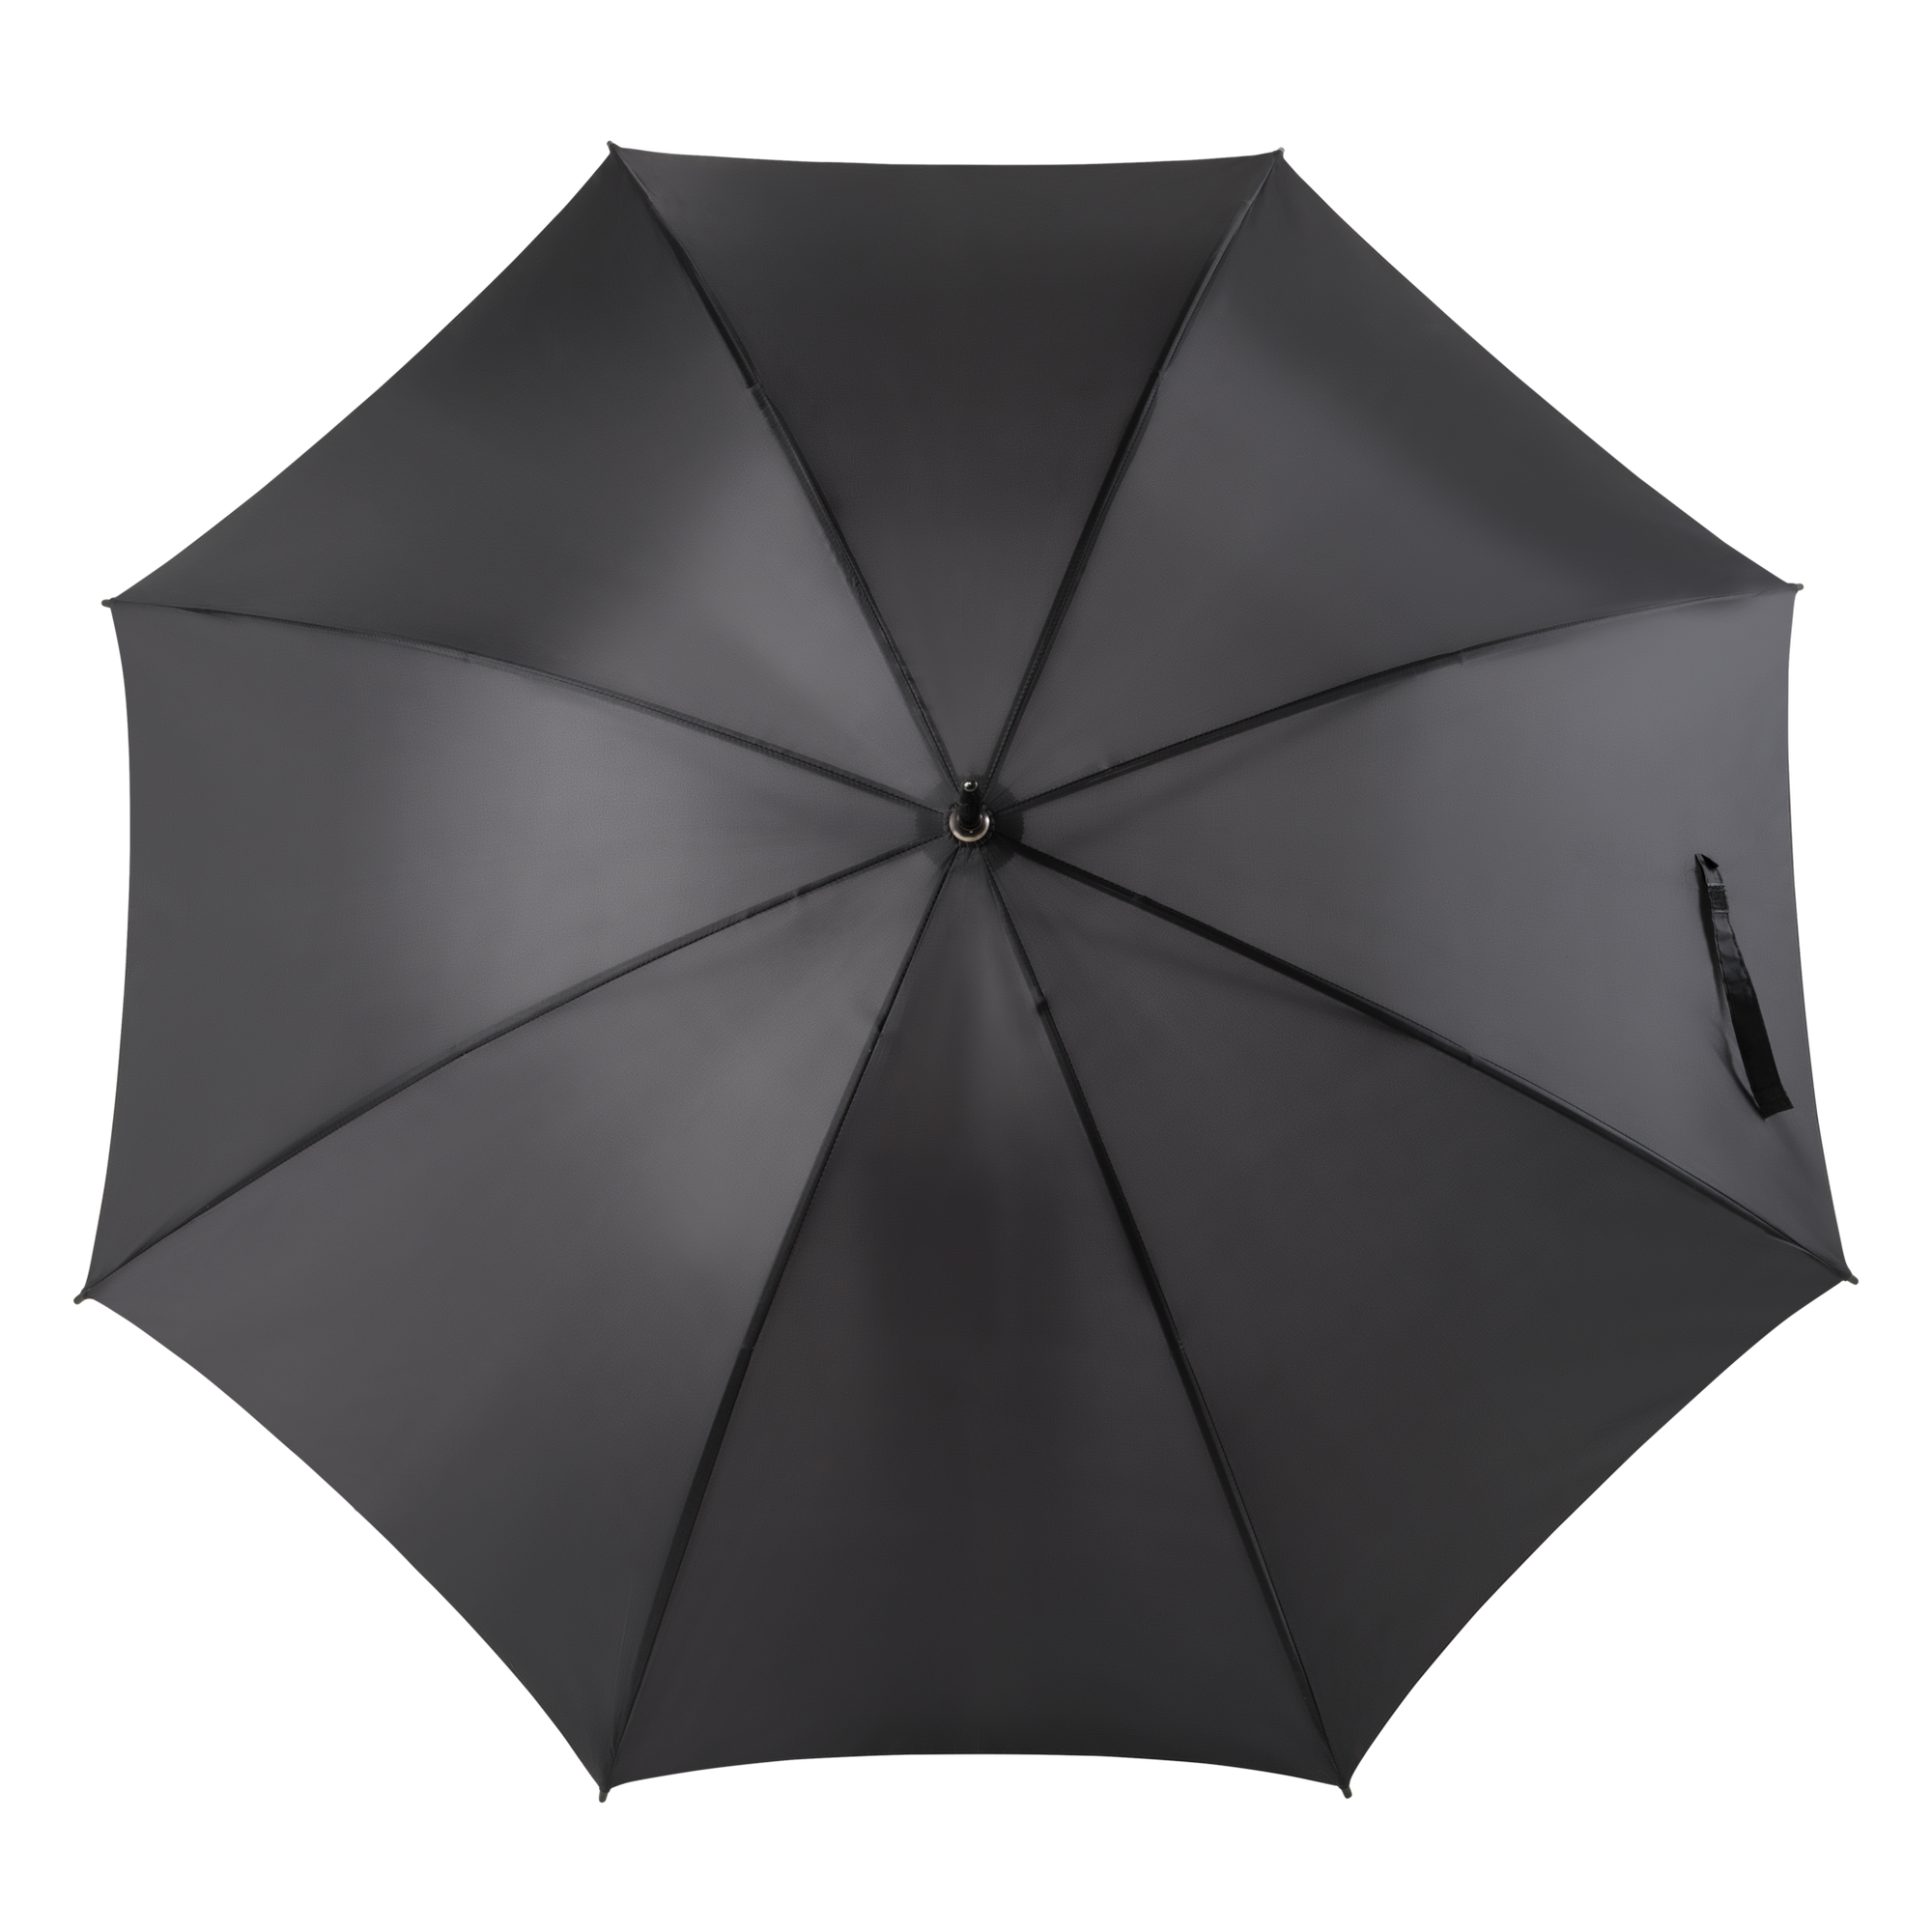 Umbrella rental - black